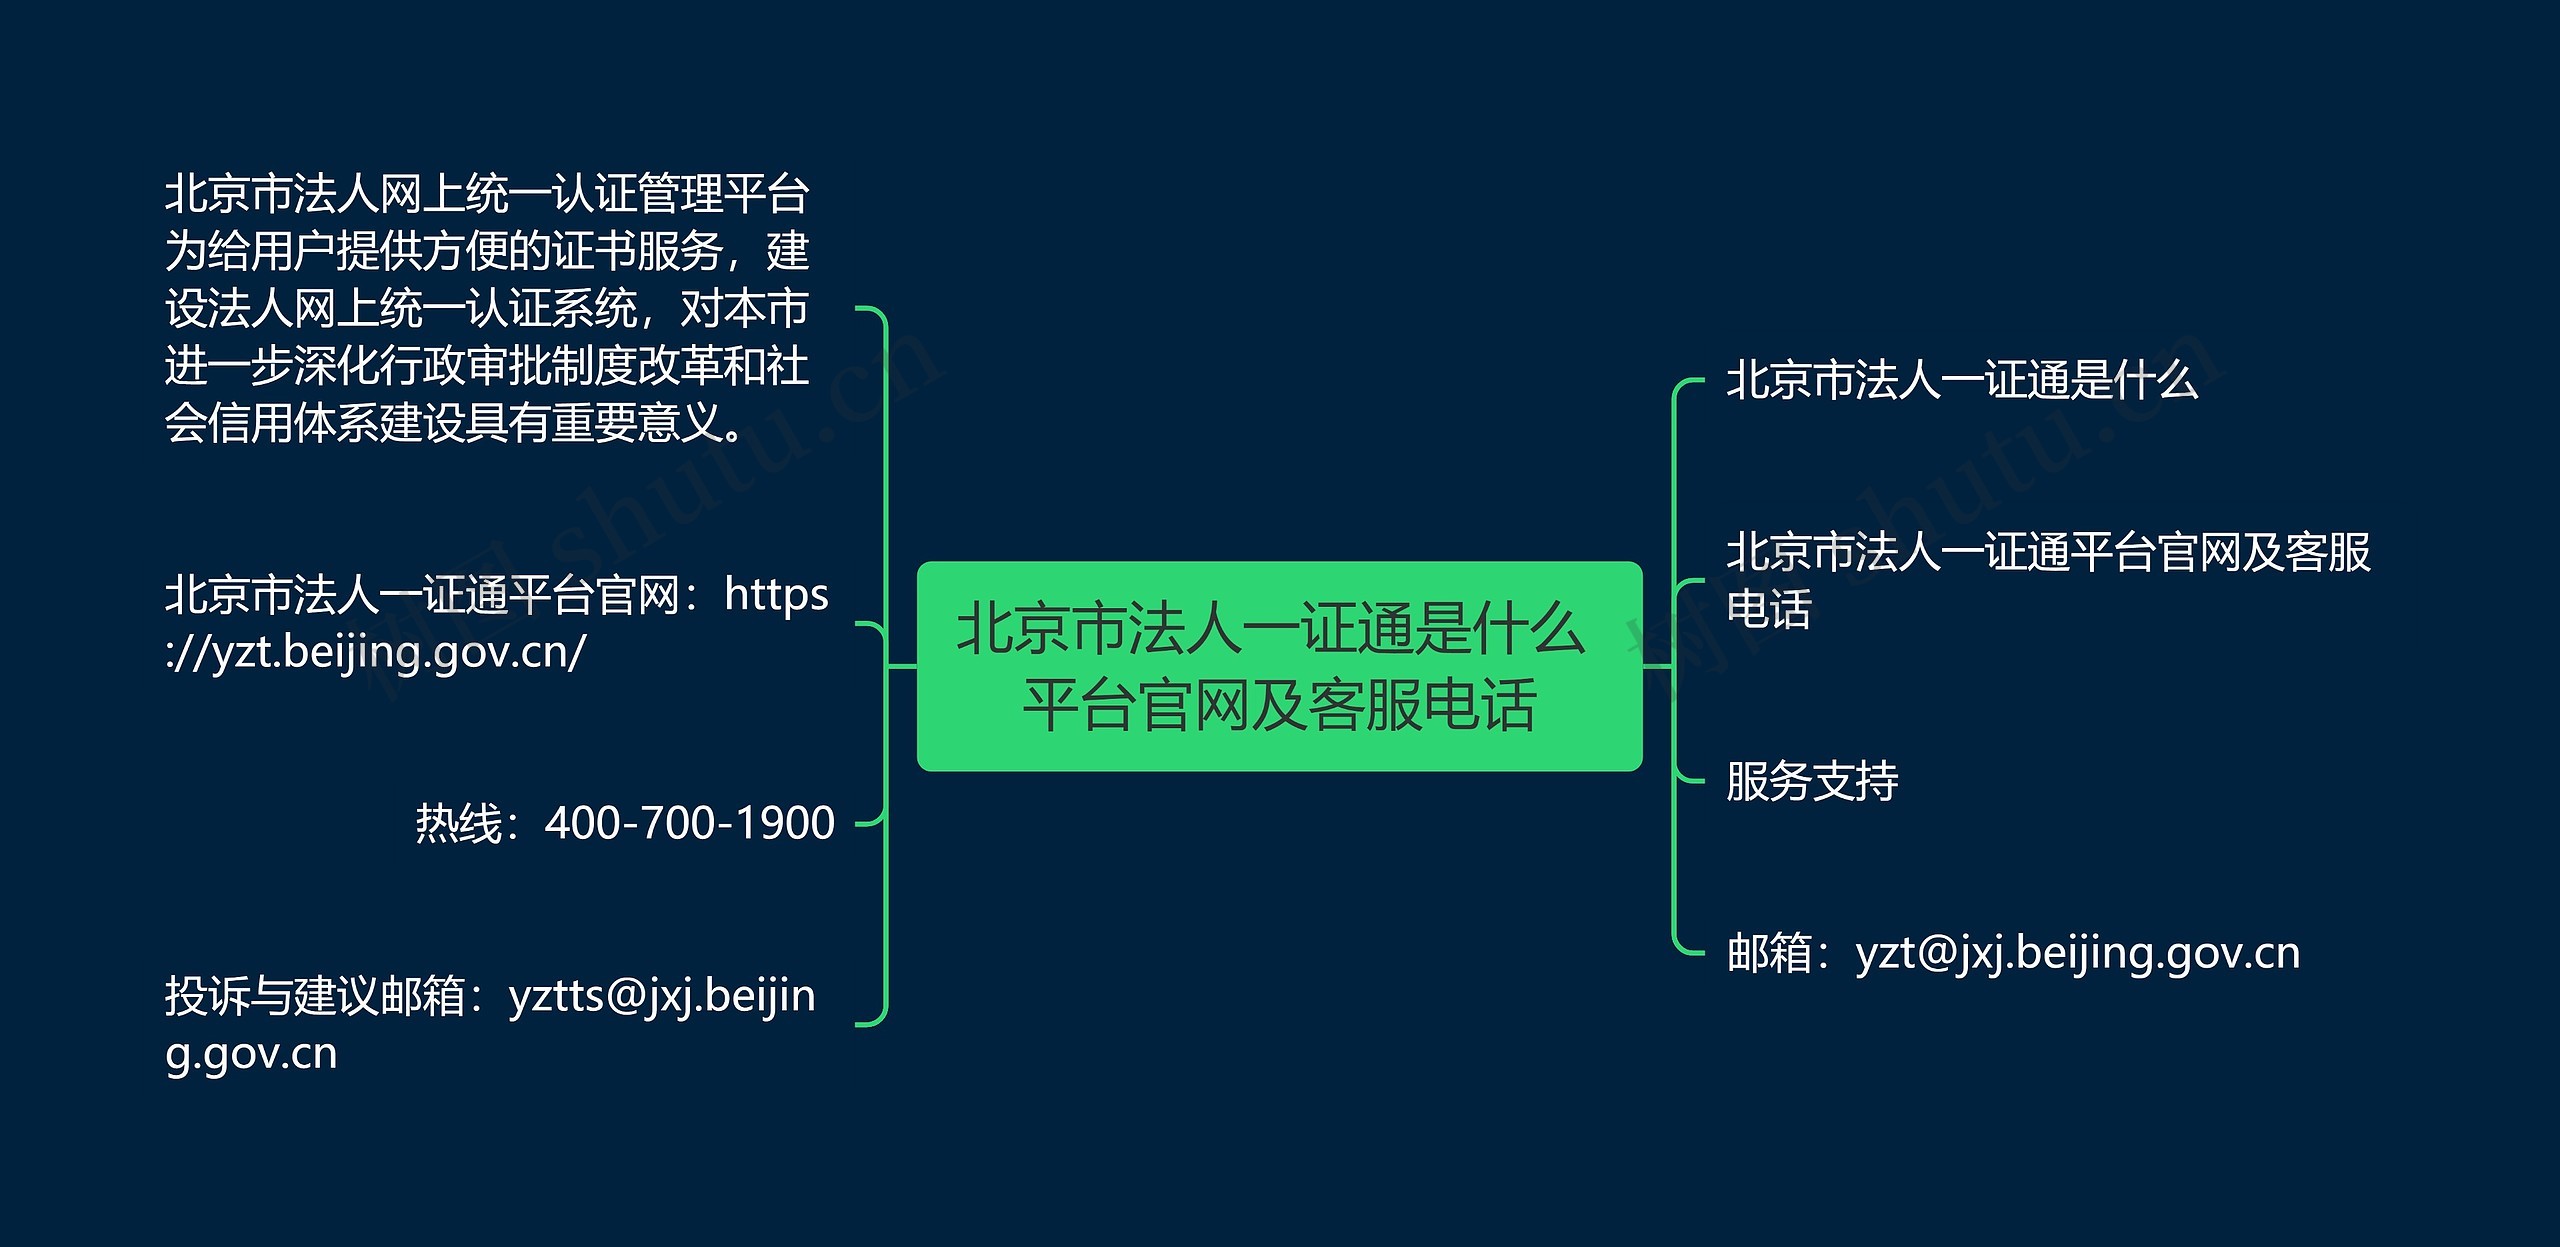 北京市法人一证通是什么 平台官网及客服电话